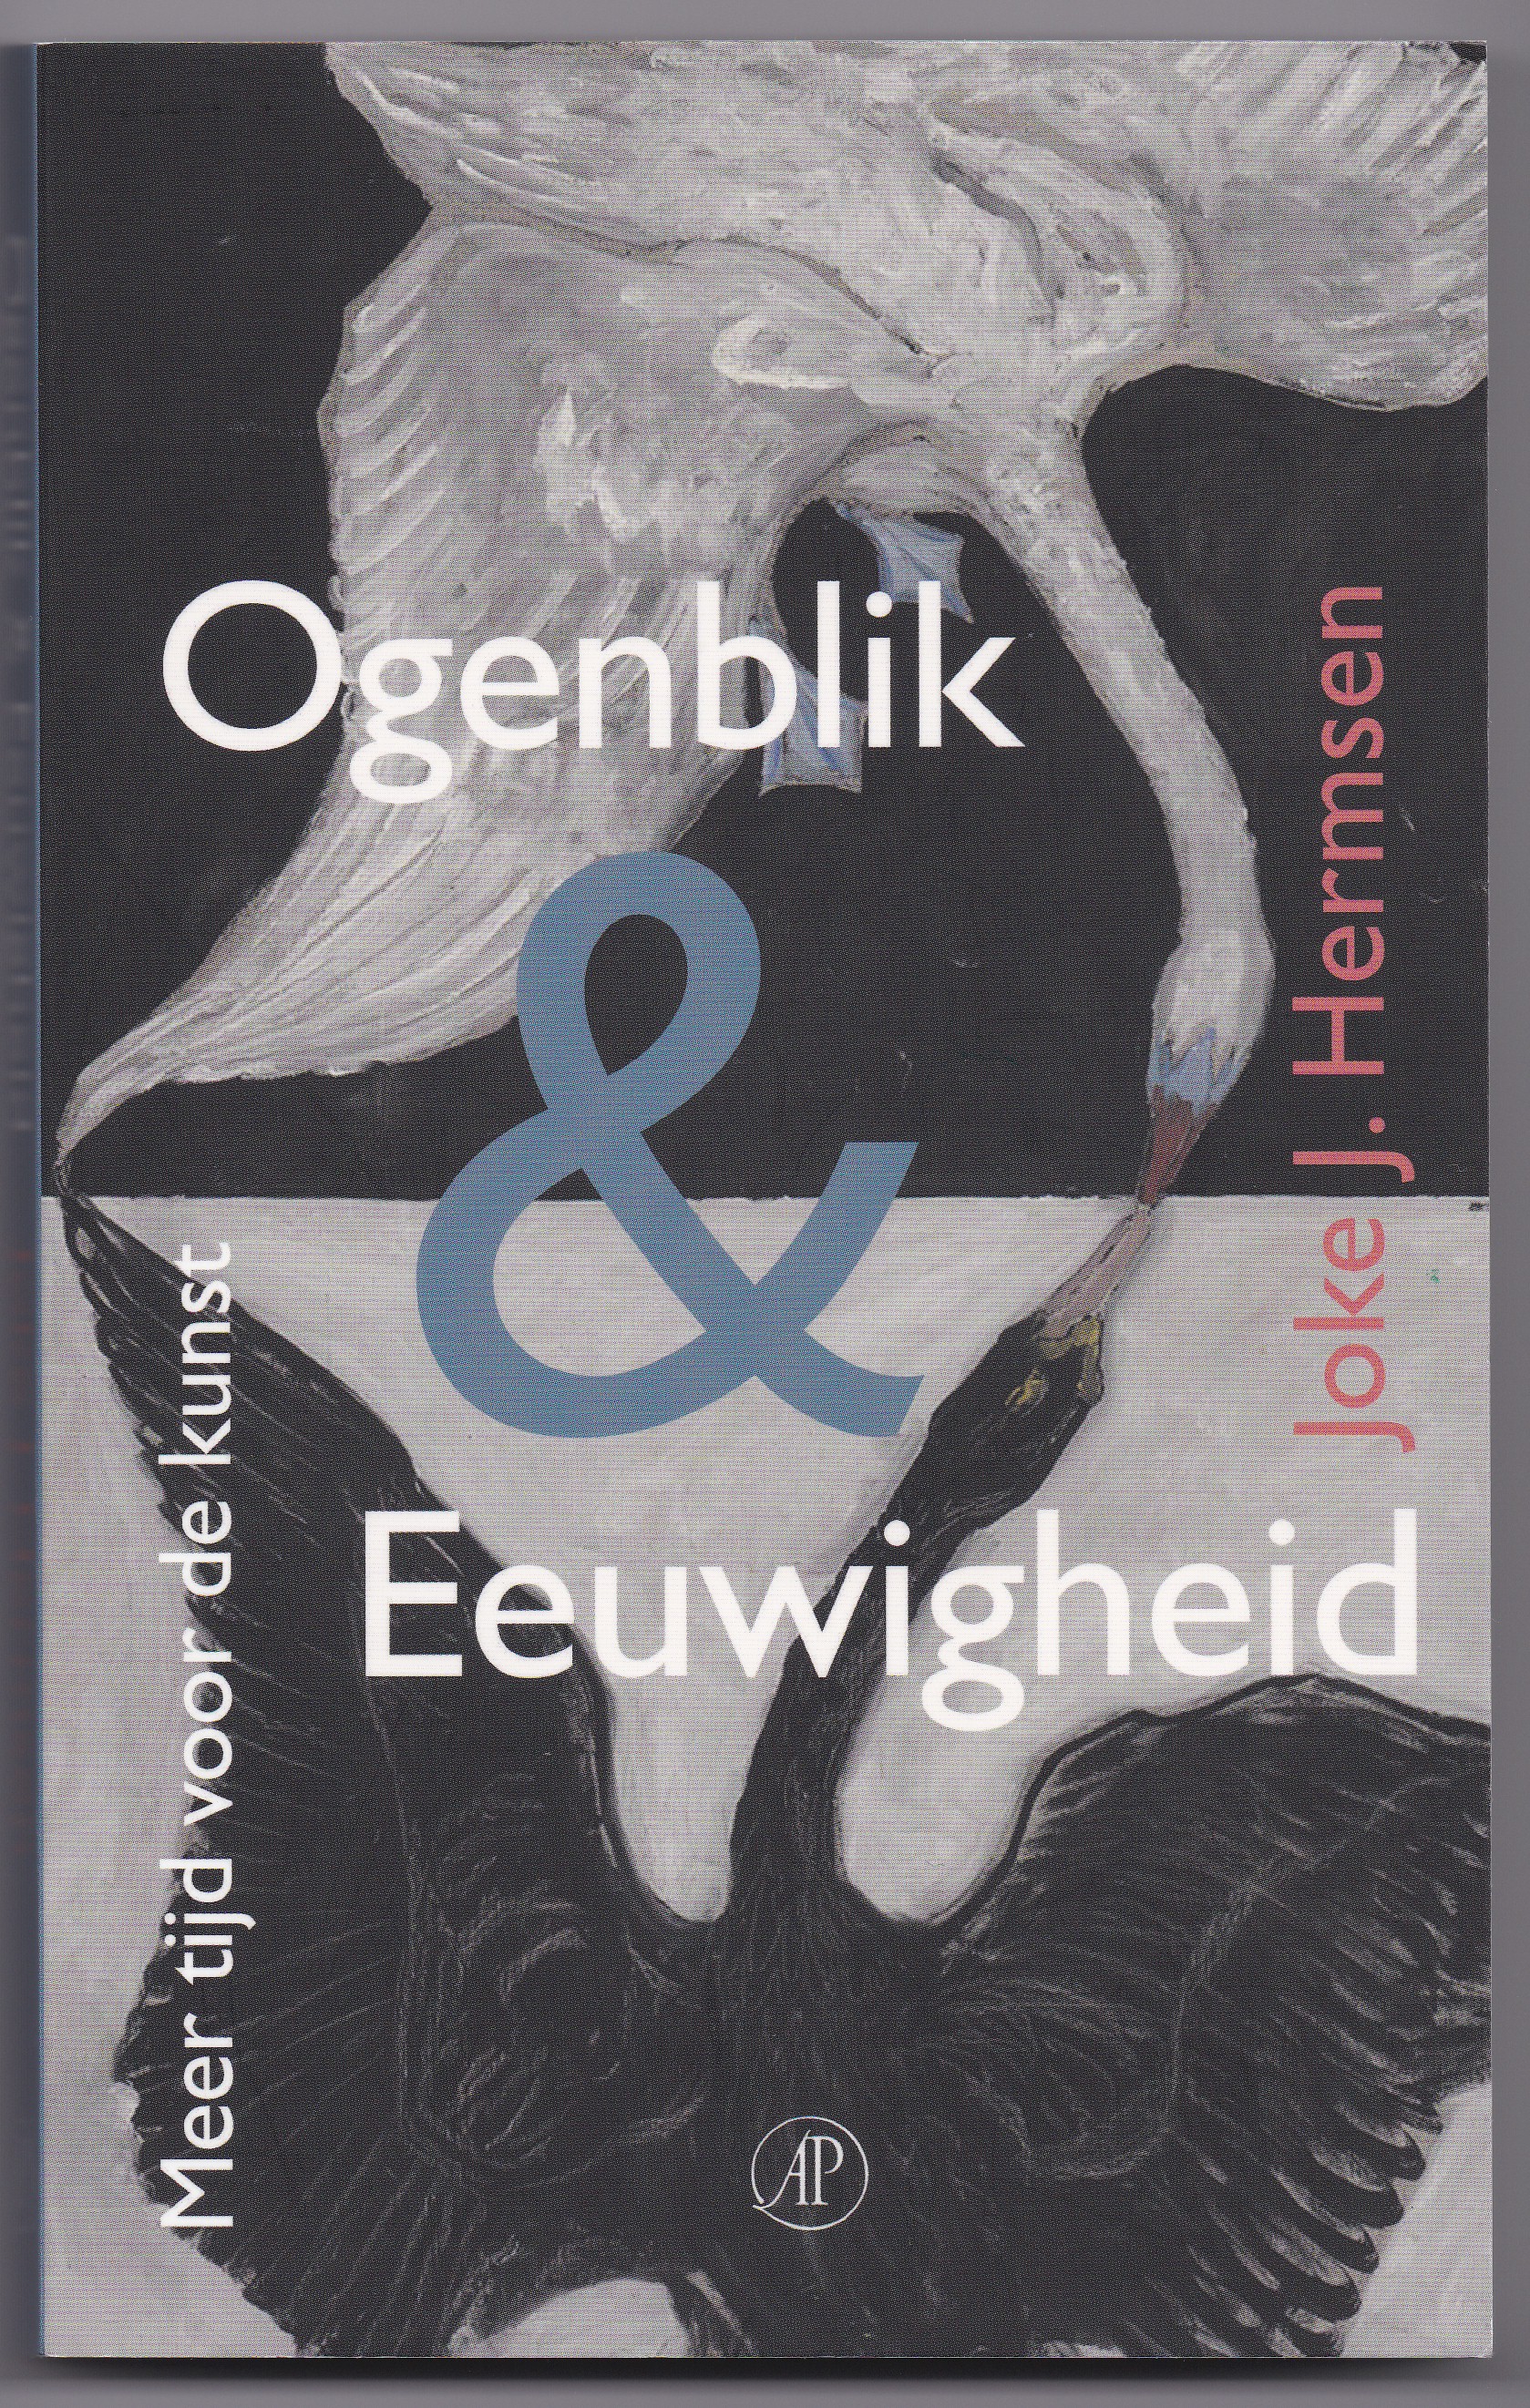 Hermsen, Joke J. - Ogenblik & Eeuwigheid. Meer tijd voor de kunst. Essays